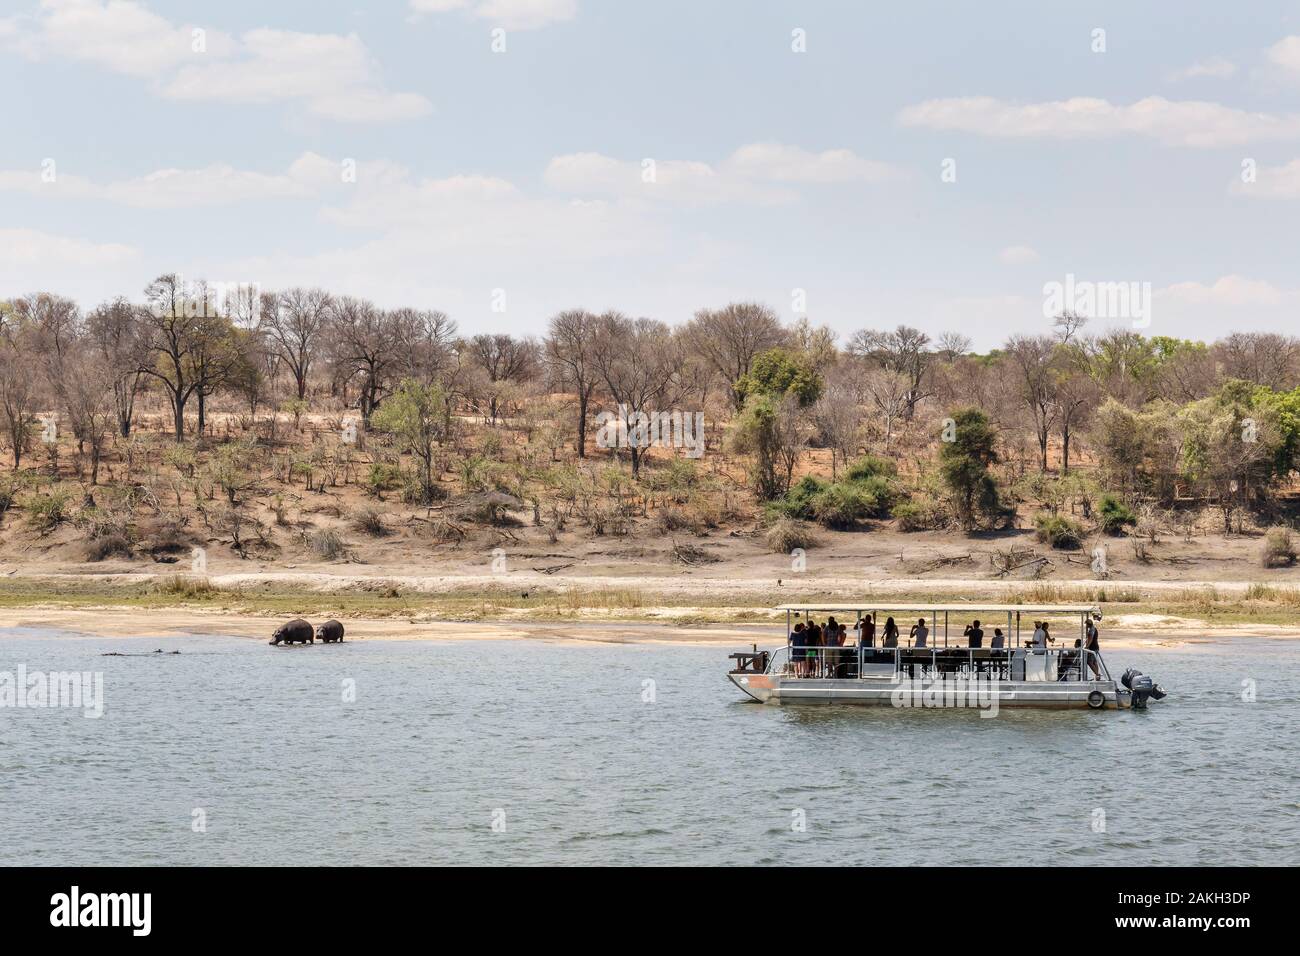 La Namibie, province de Kavango, Parc National de Bwabwata, touristes bateau sur l'Okavango hippopotames regarder Banque D'Images